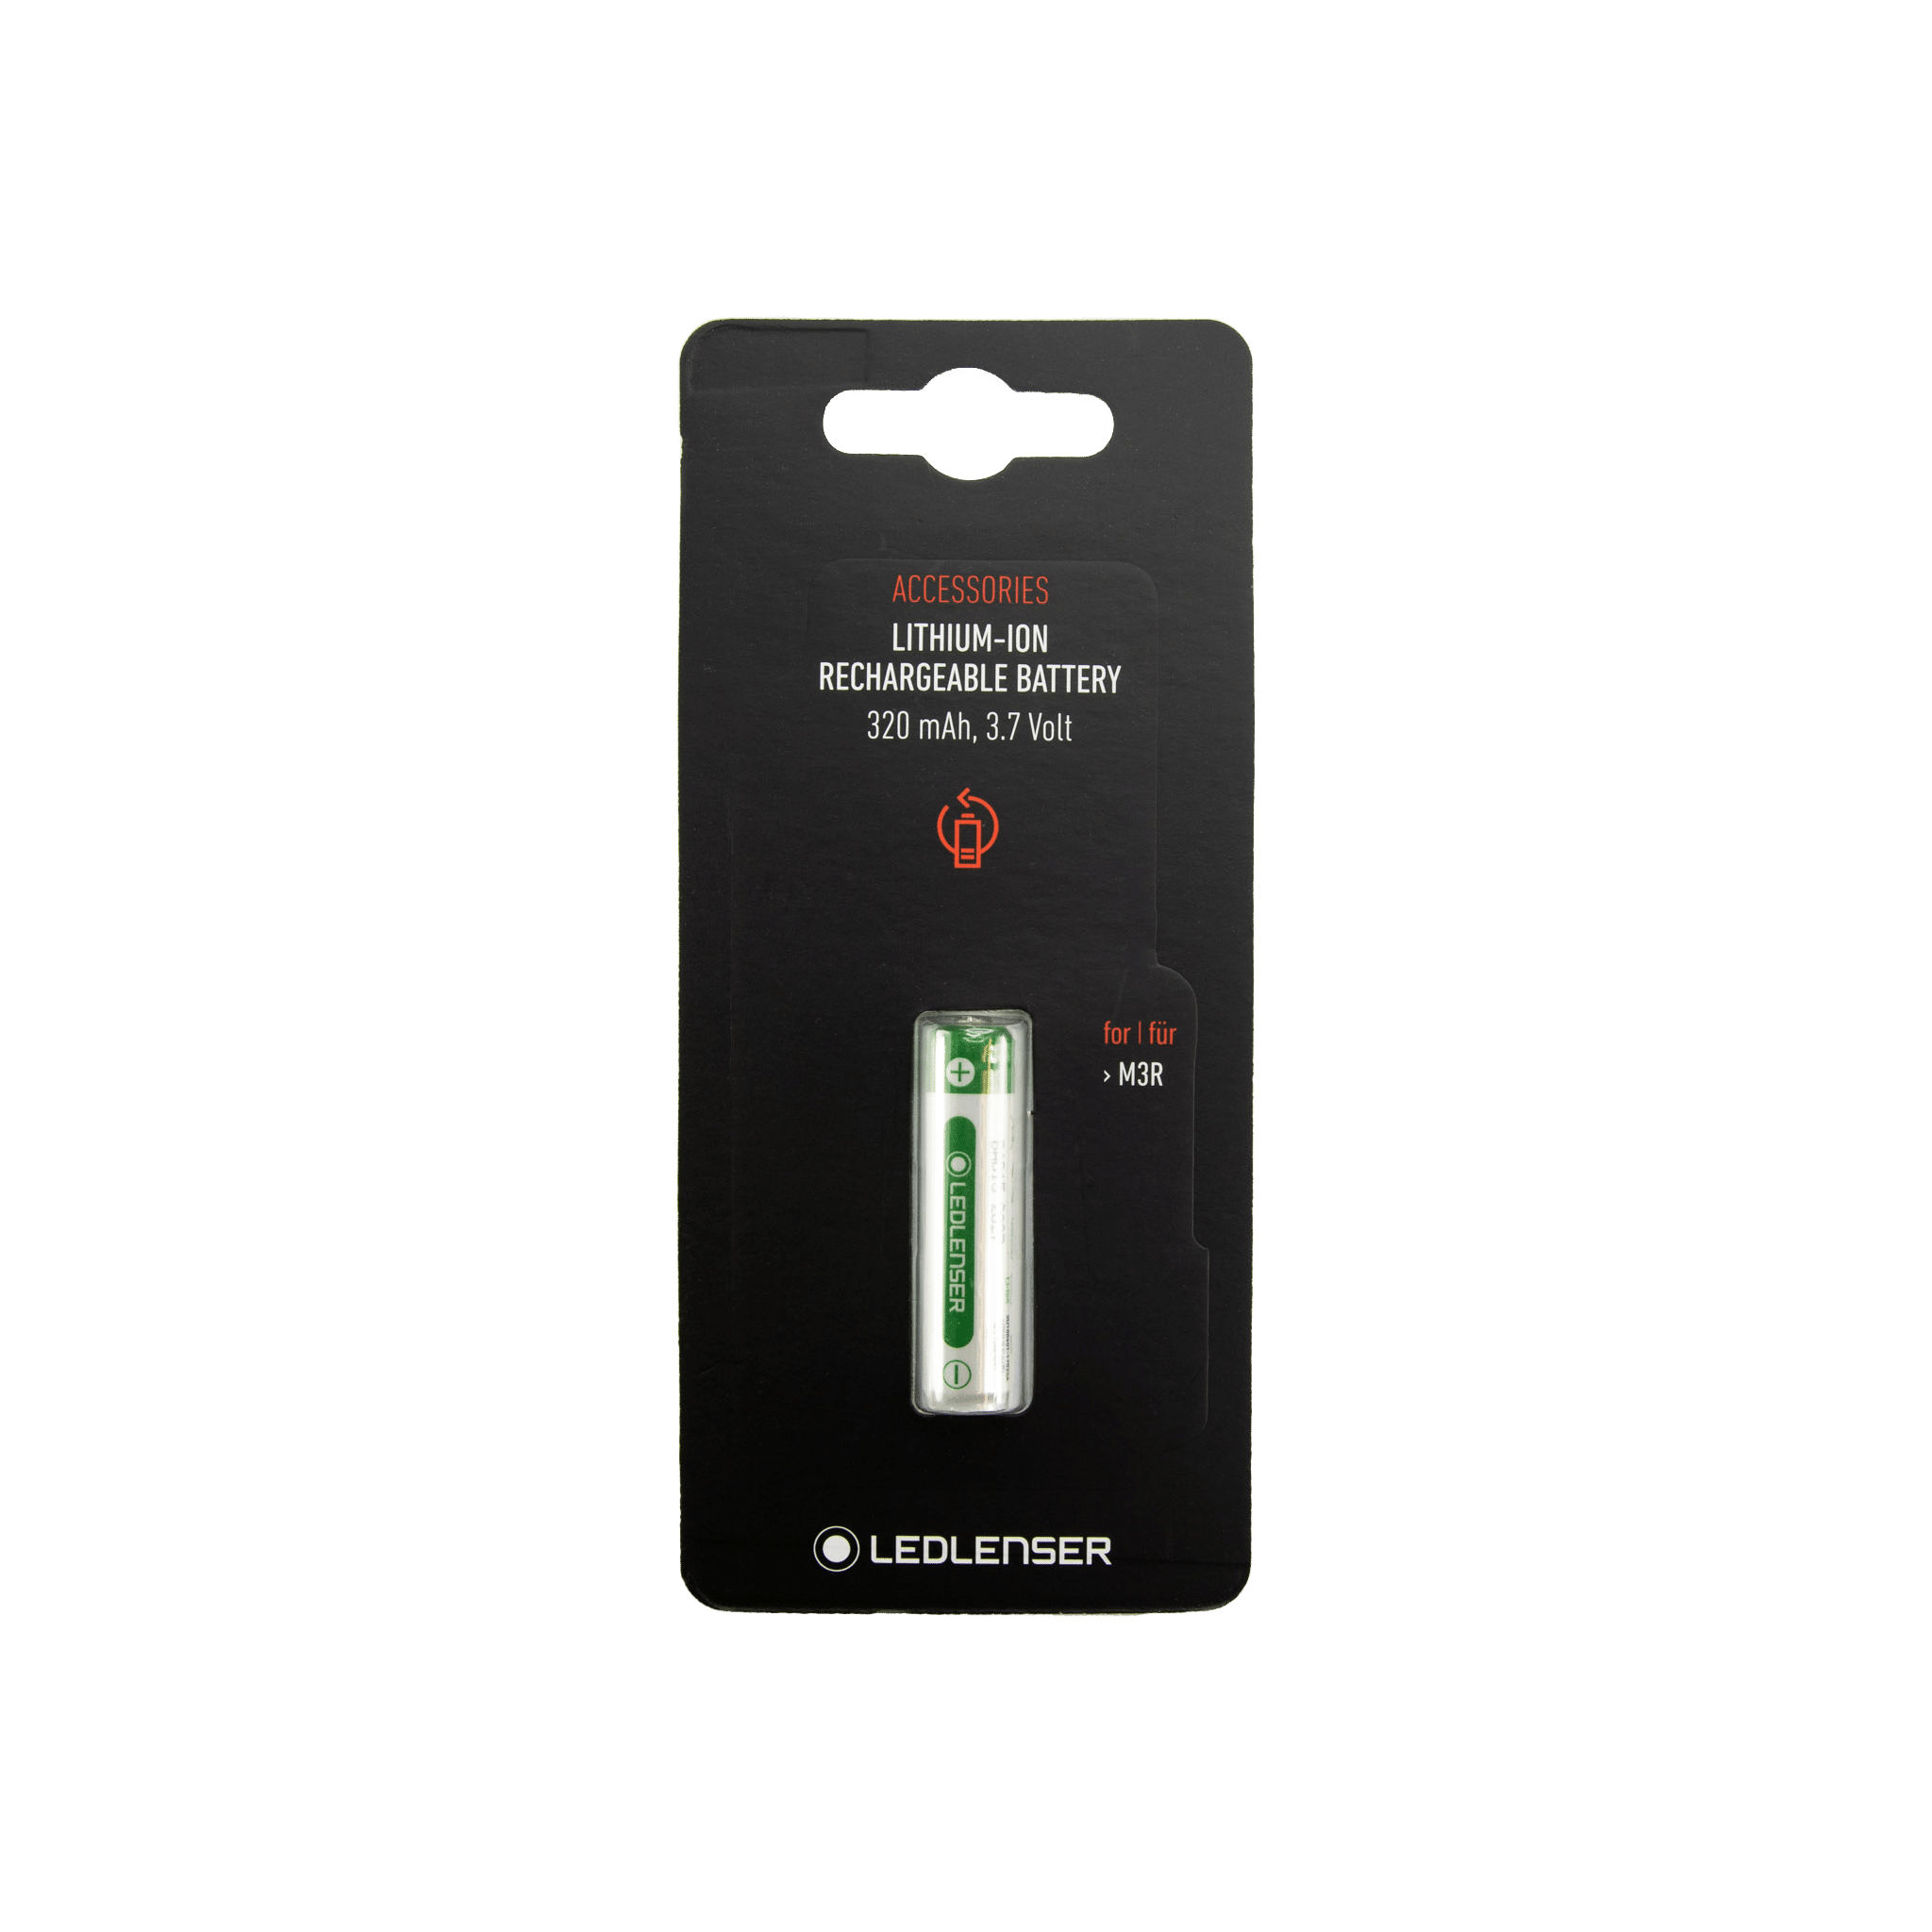 LED LENSER coast battery cartridge battery holder for LED Lenser